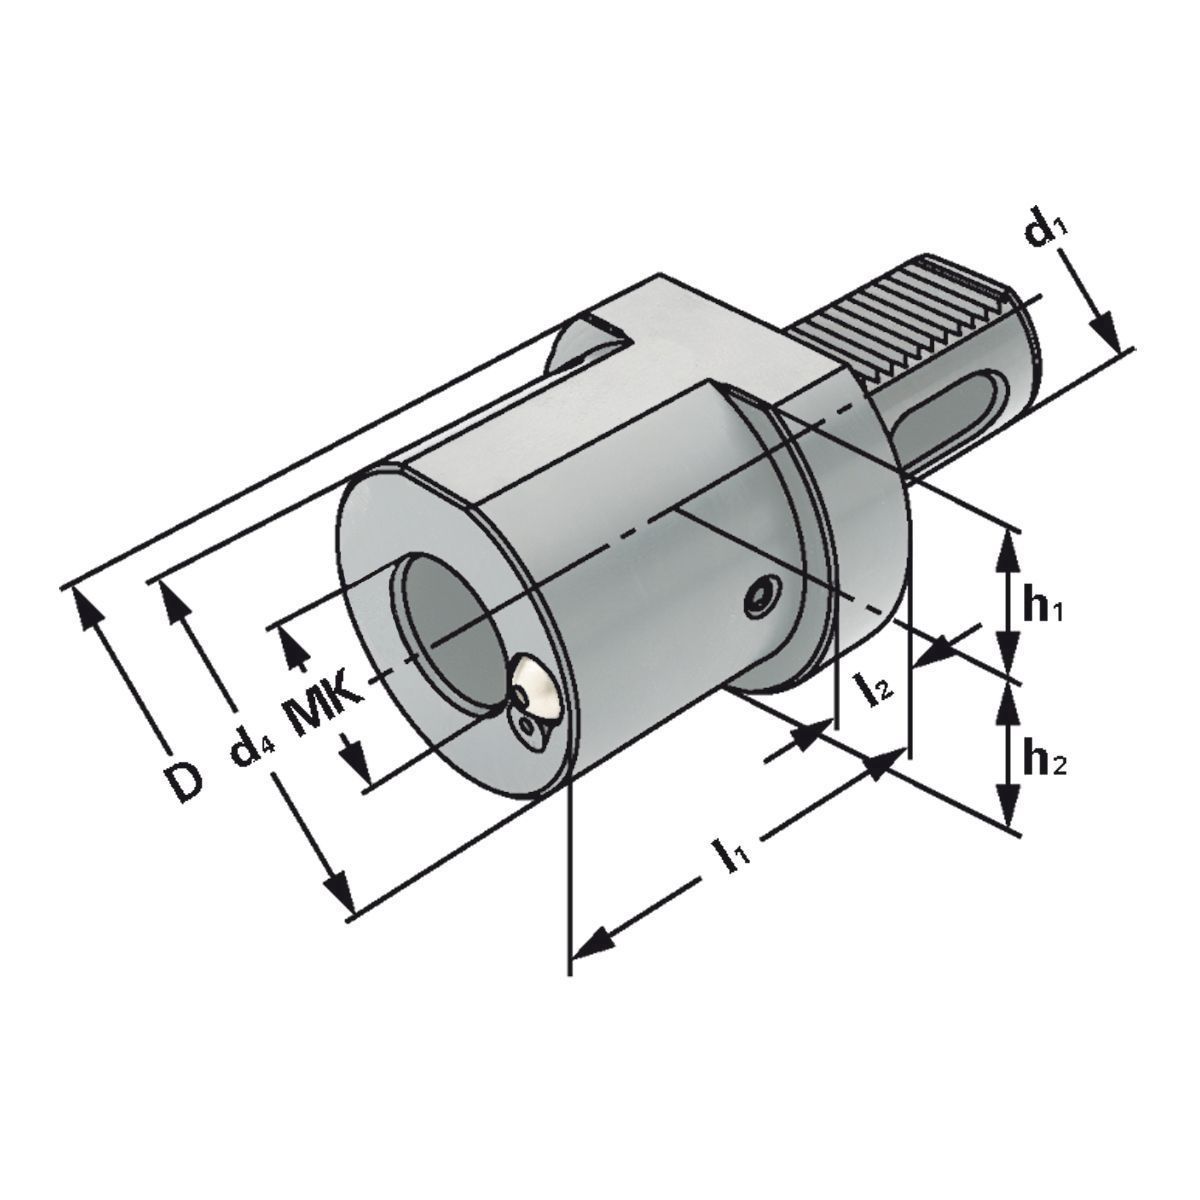 MK-Bohrerhalter F1-30xMK2 DIN 69880 (ISO 10889)